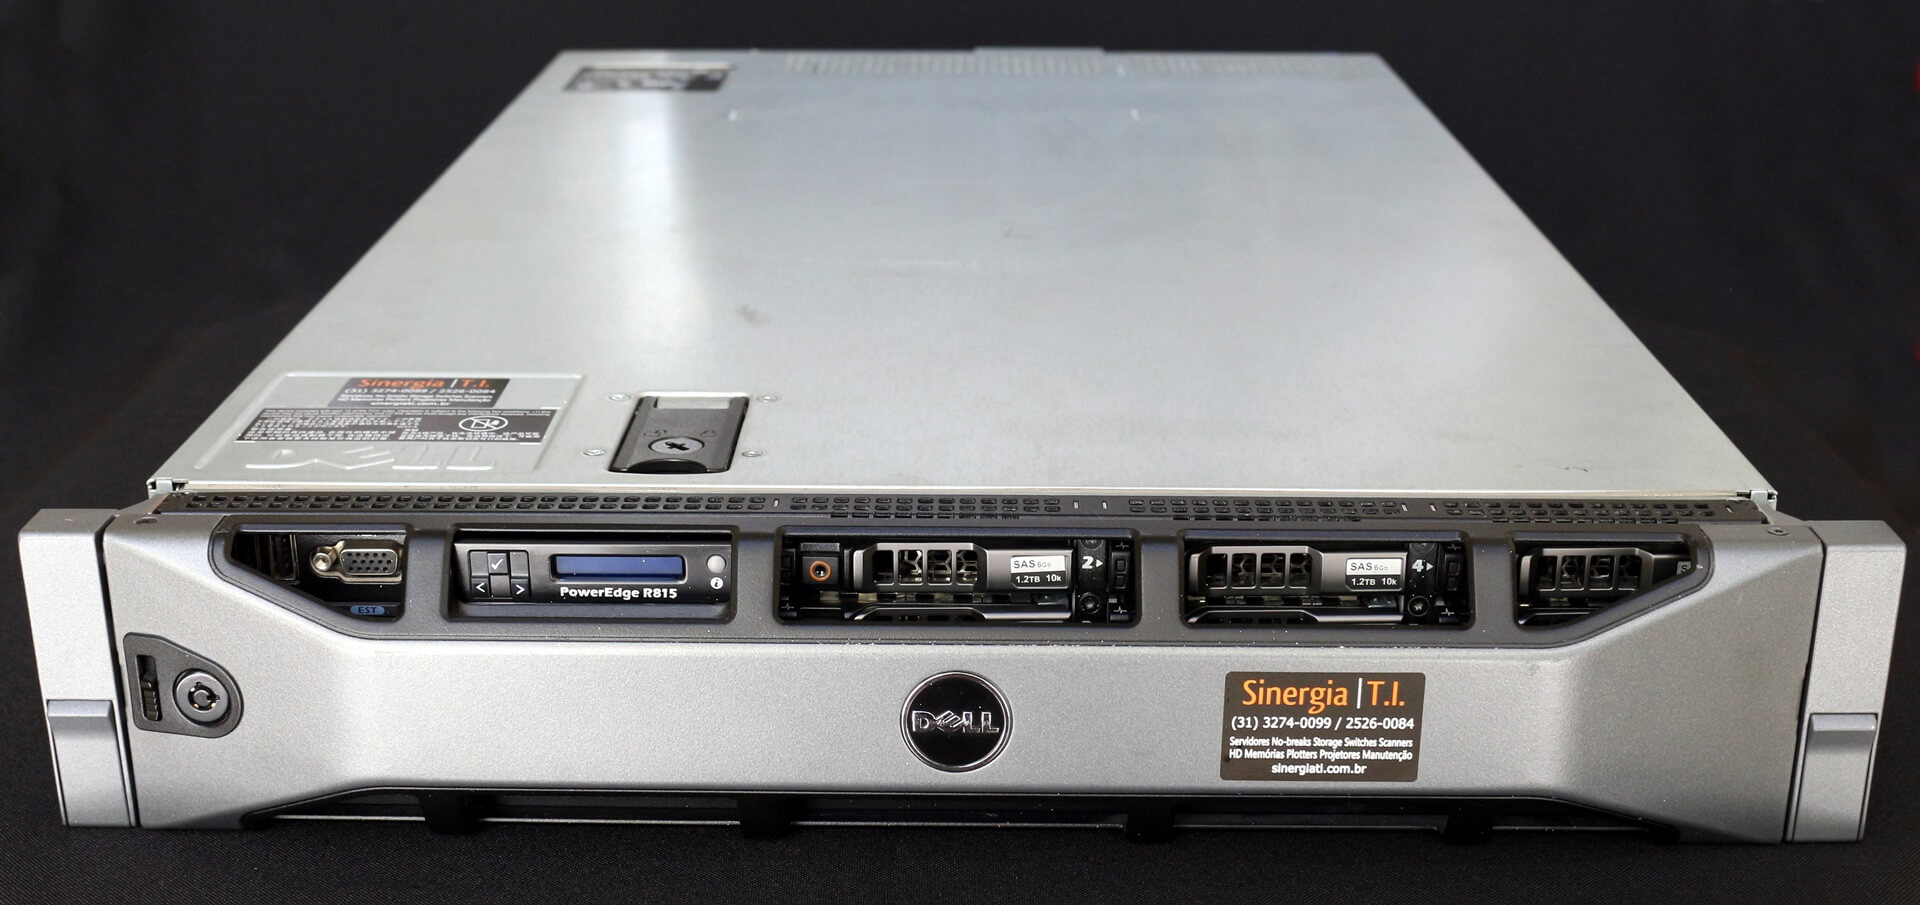 R815 Servidor Dell PowerEdge 2U Ideal para Virtualização e Banco de Dados Rack 4 X OctaCore - Seminovo capa